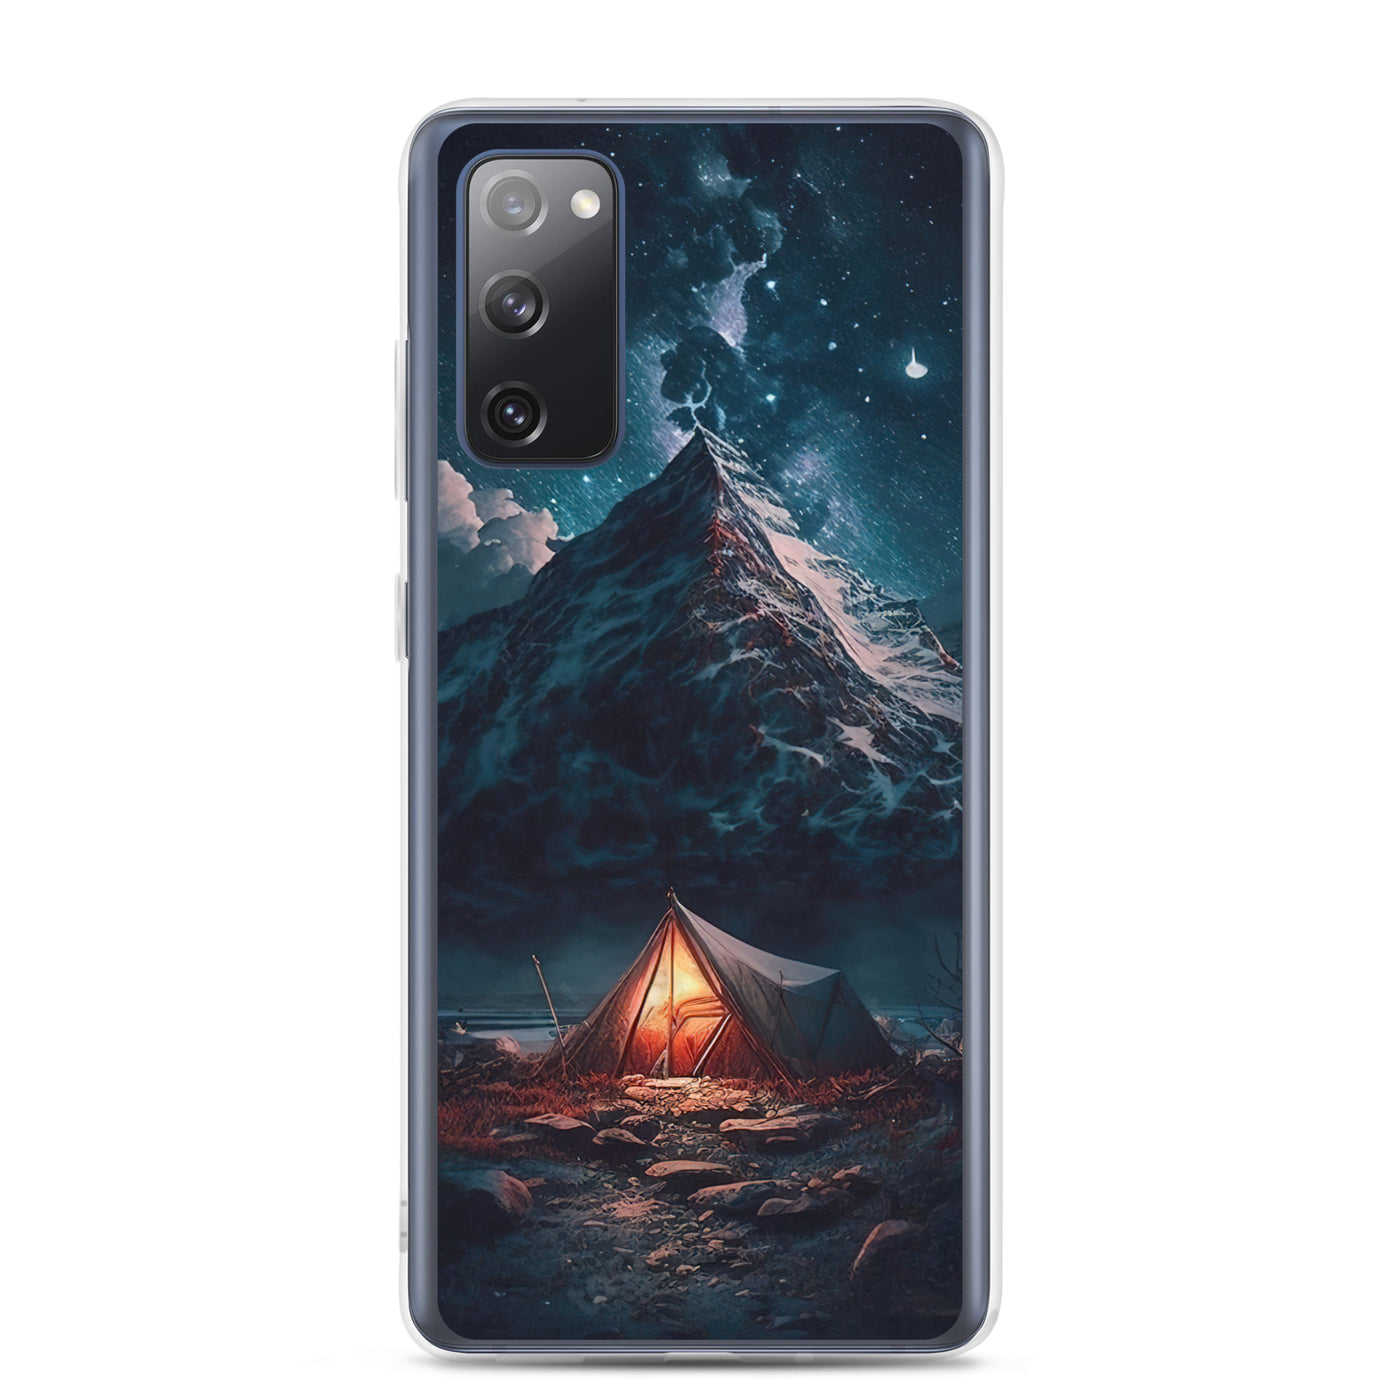 Zelt und Berg in der Nacht - Sterne am Himmel - Landschaftsmalerei - Samsung Schutzhülle (durchsichtig) camping xxx